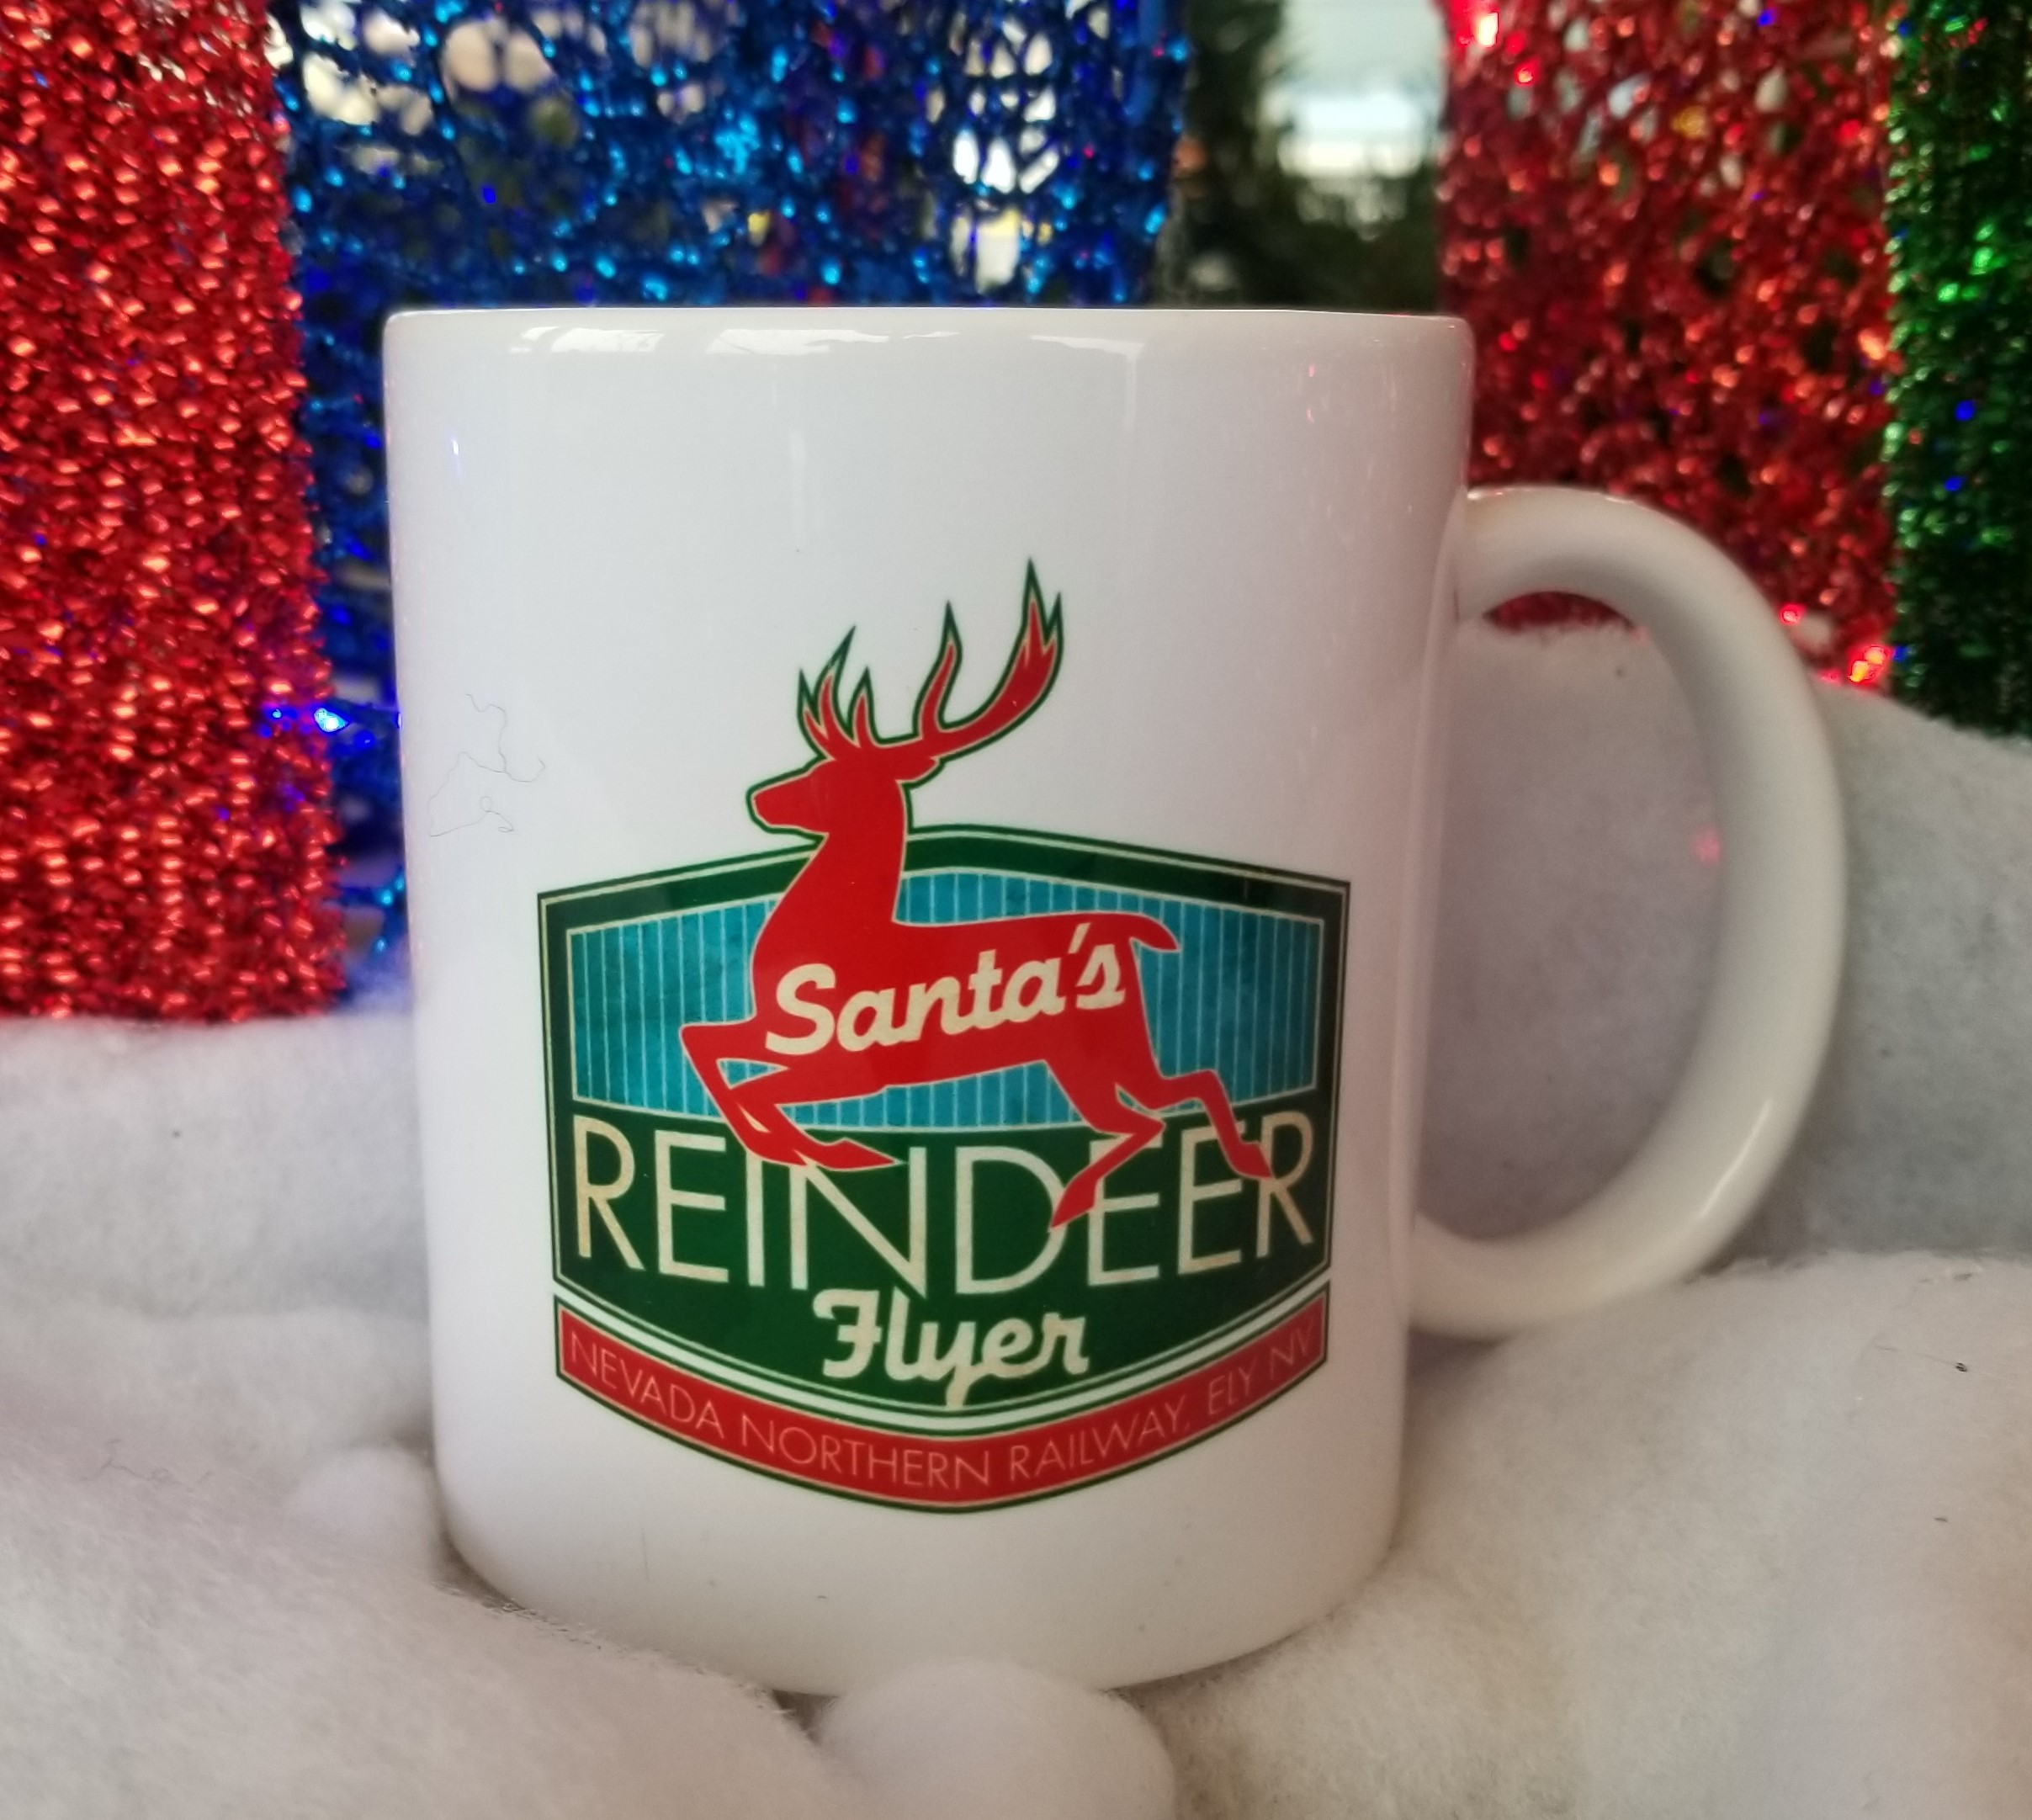 Santa's Reindeer Flyer Mug 2021